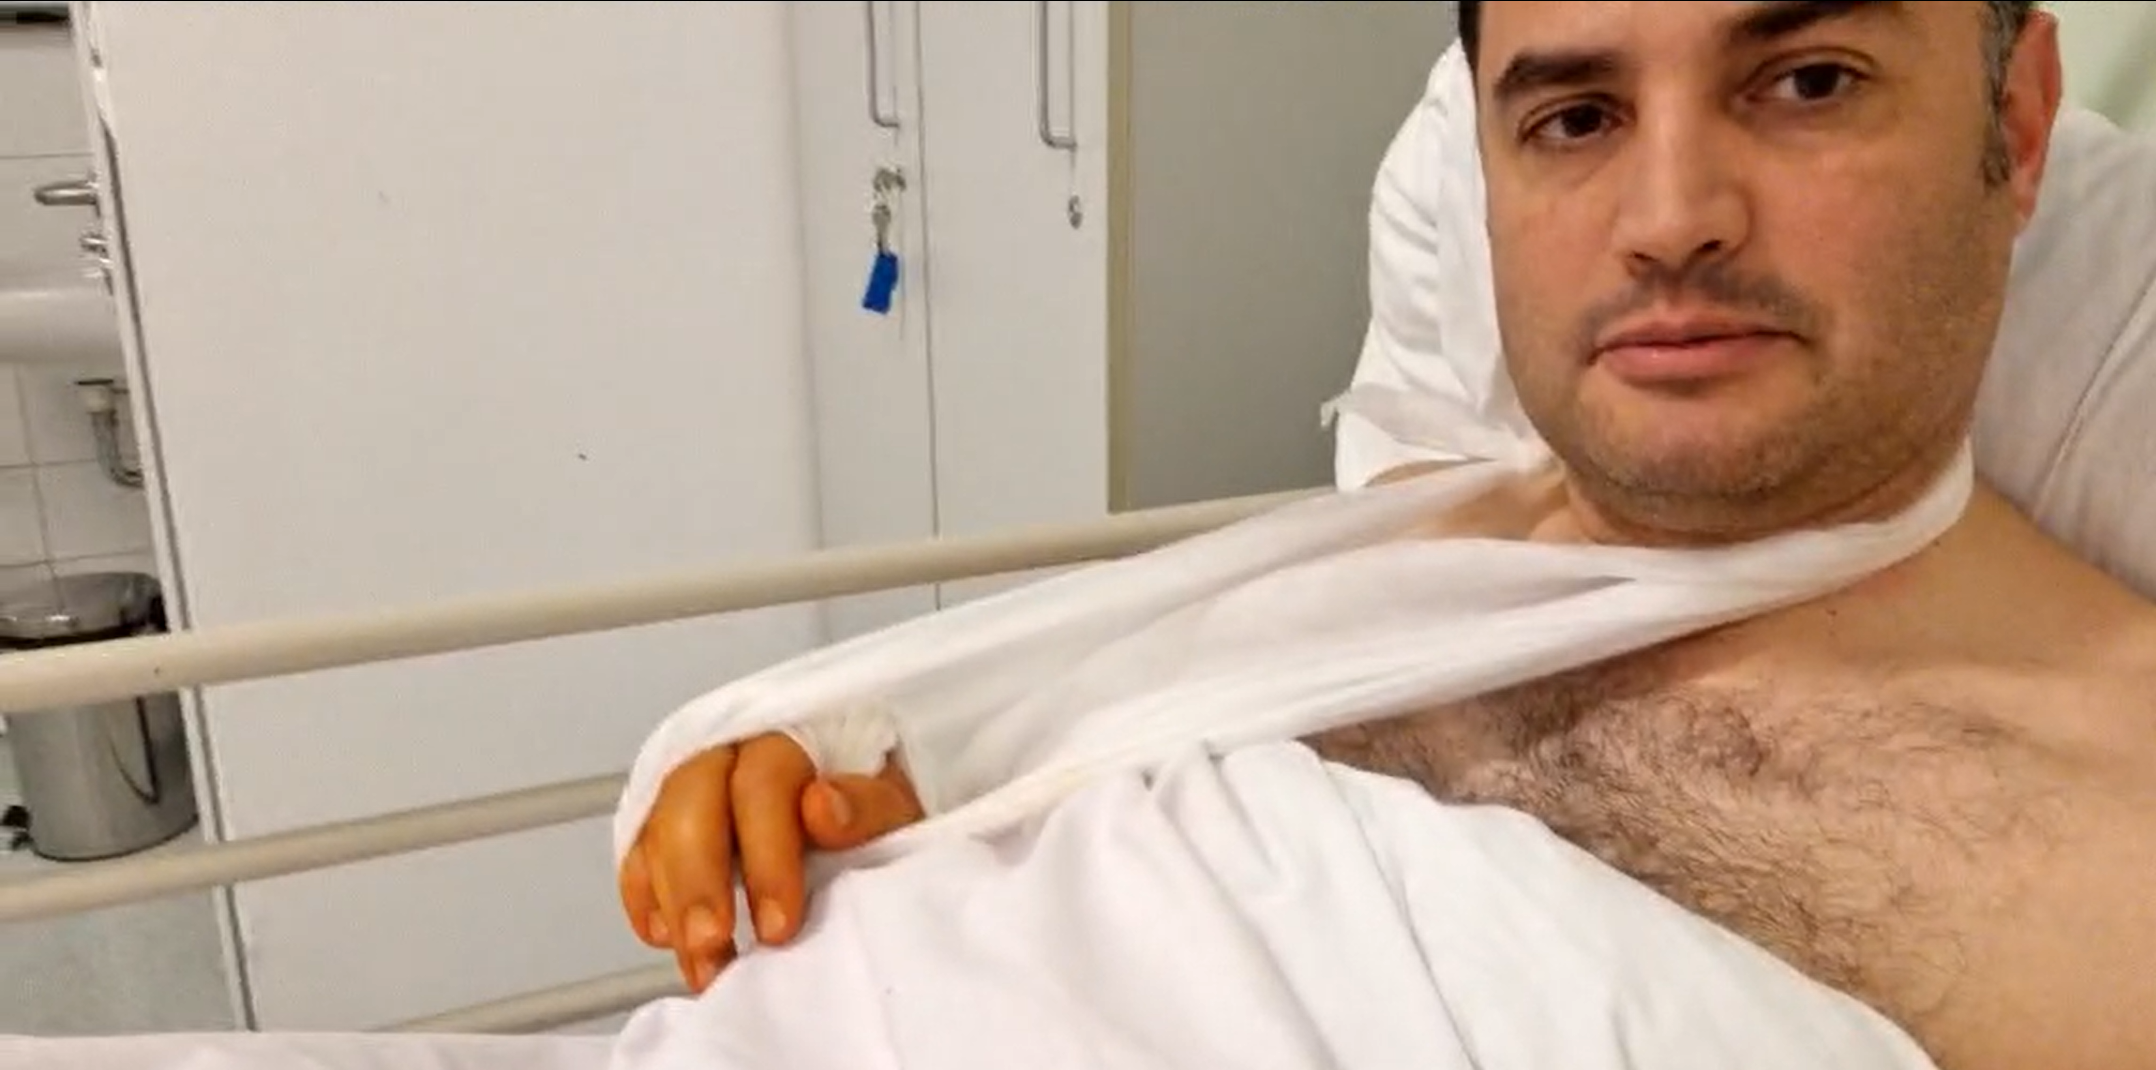 Robotzsaru lettem" - a kórházi ágyból élőzött Márki-Zay Péter - videó -  Blikk